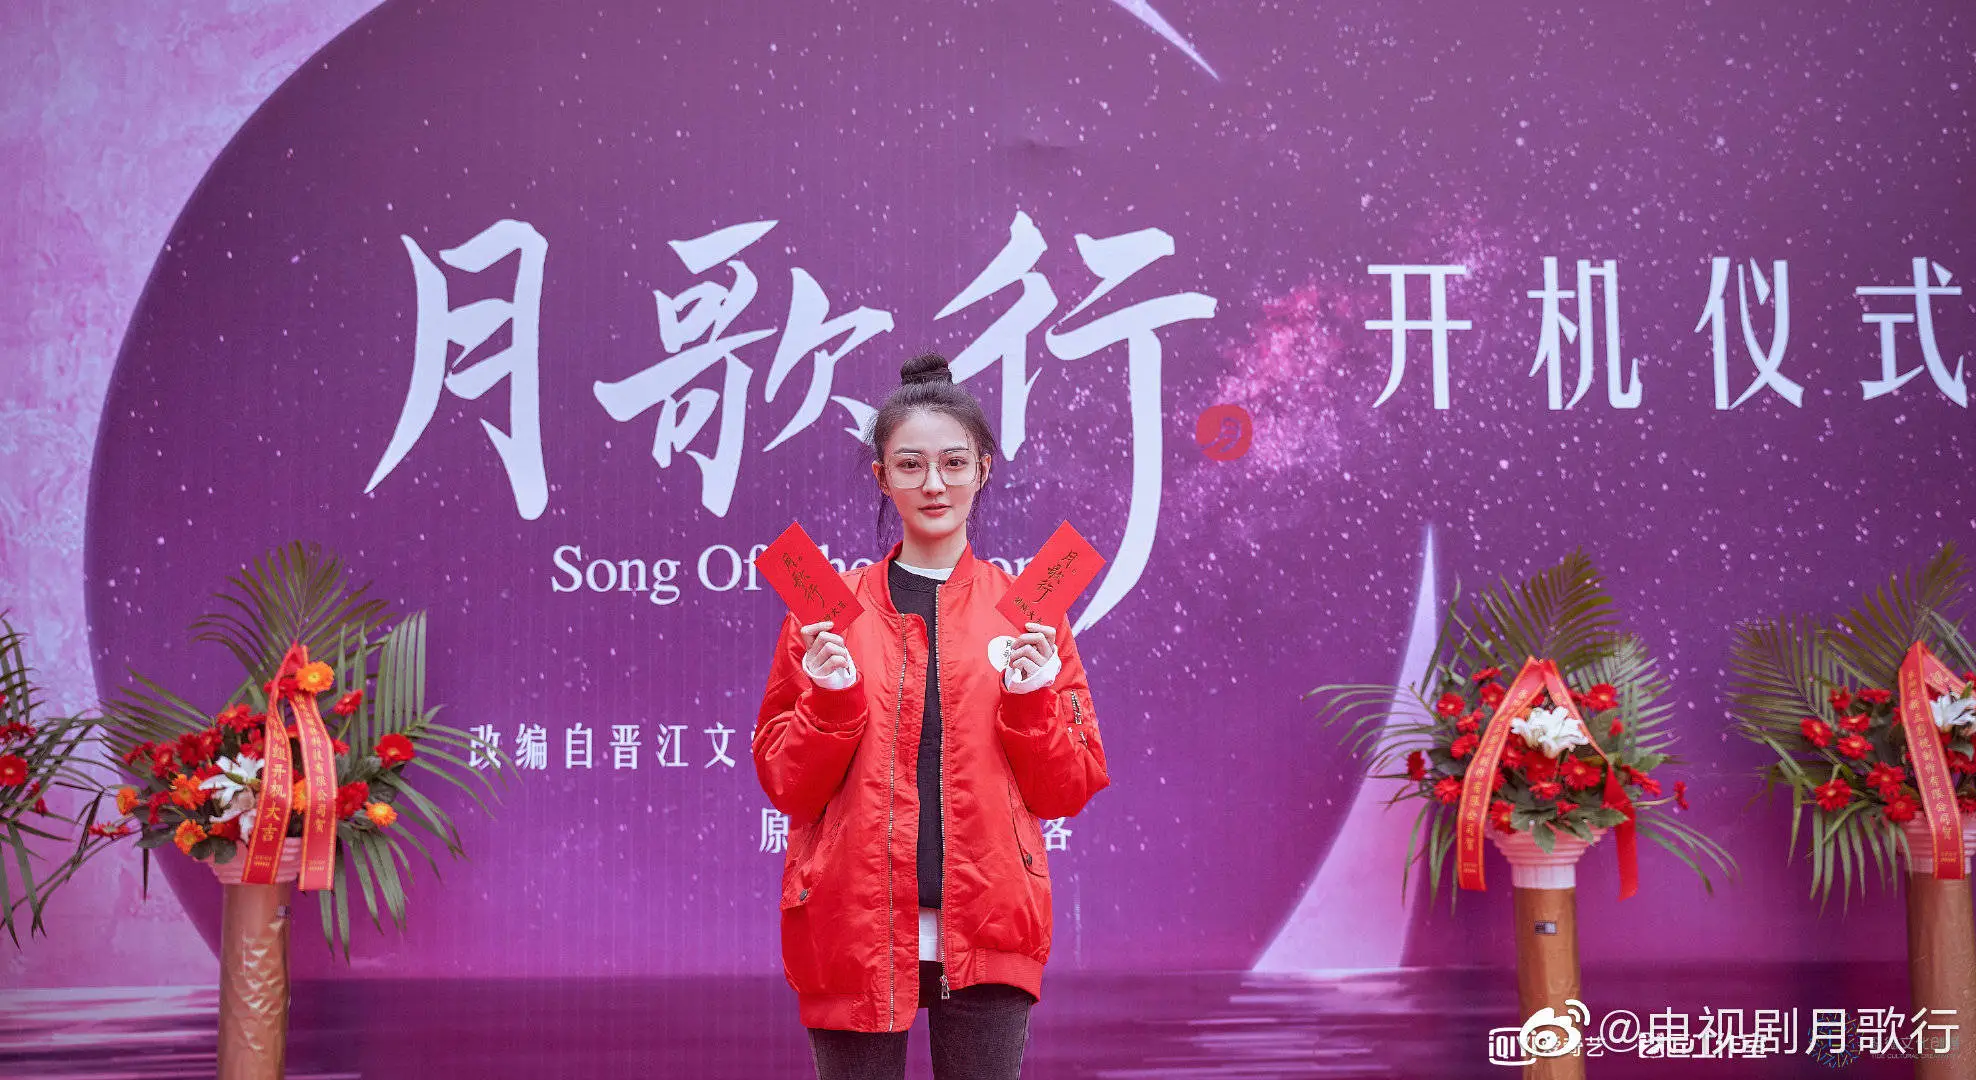 《月歌行》正式开机  Lu Xu 气色大好出席现场仪式2.jpg